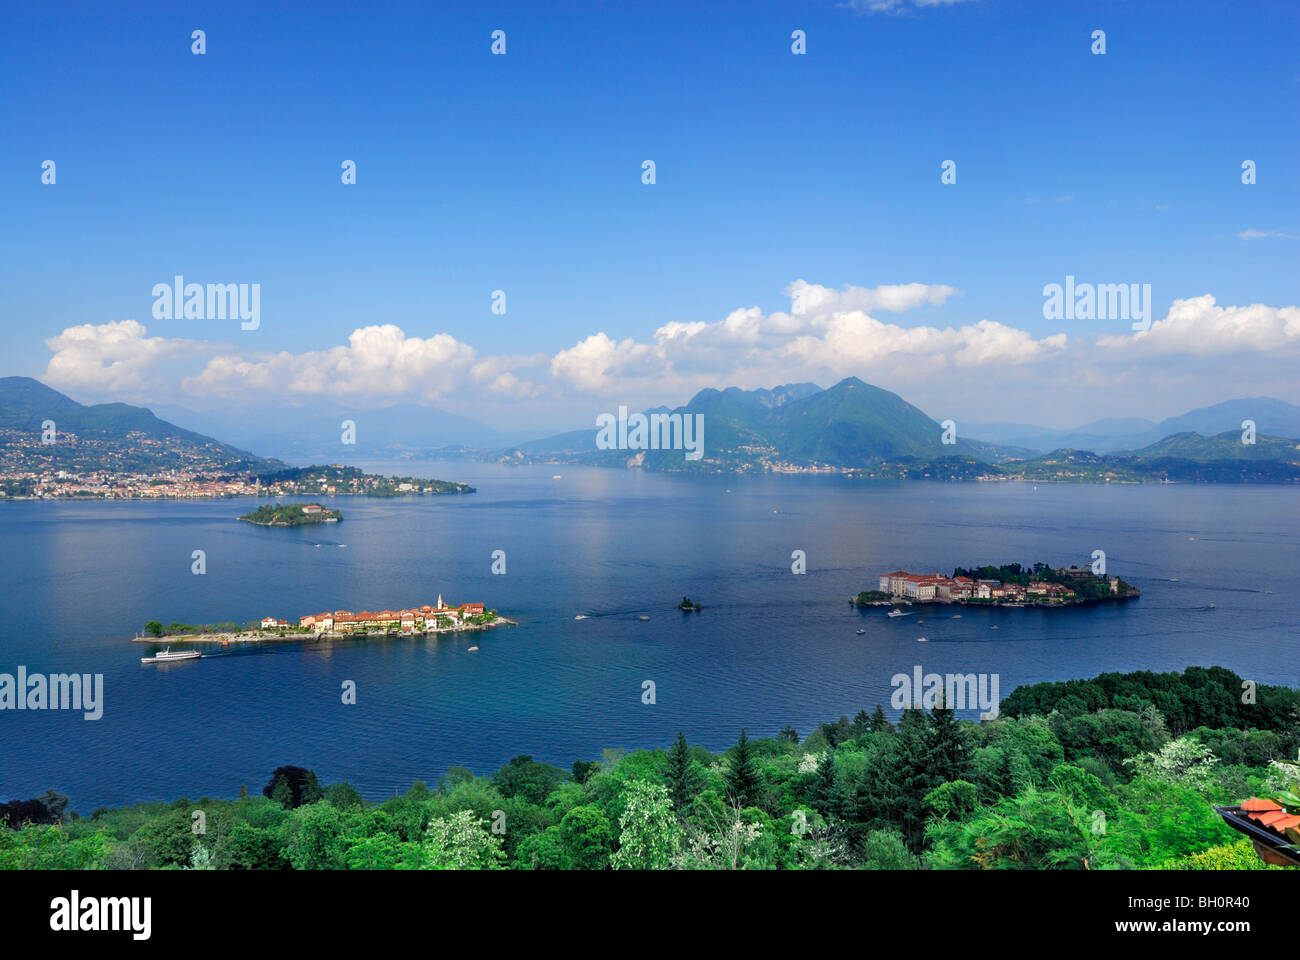 Lago Maggiore mit Borromäischen Inseln Isole Borromee, Isola Superiore, Isola Bella und Isola Madre, Stresa, Lago Maggiore, Lago Mag Stockfoto